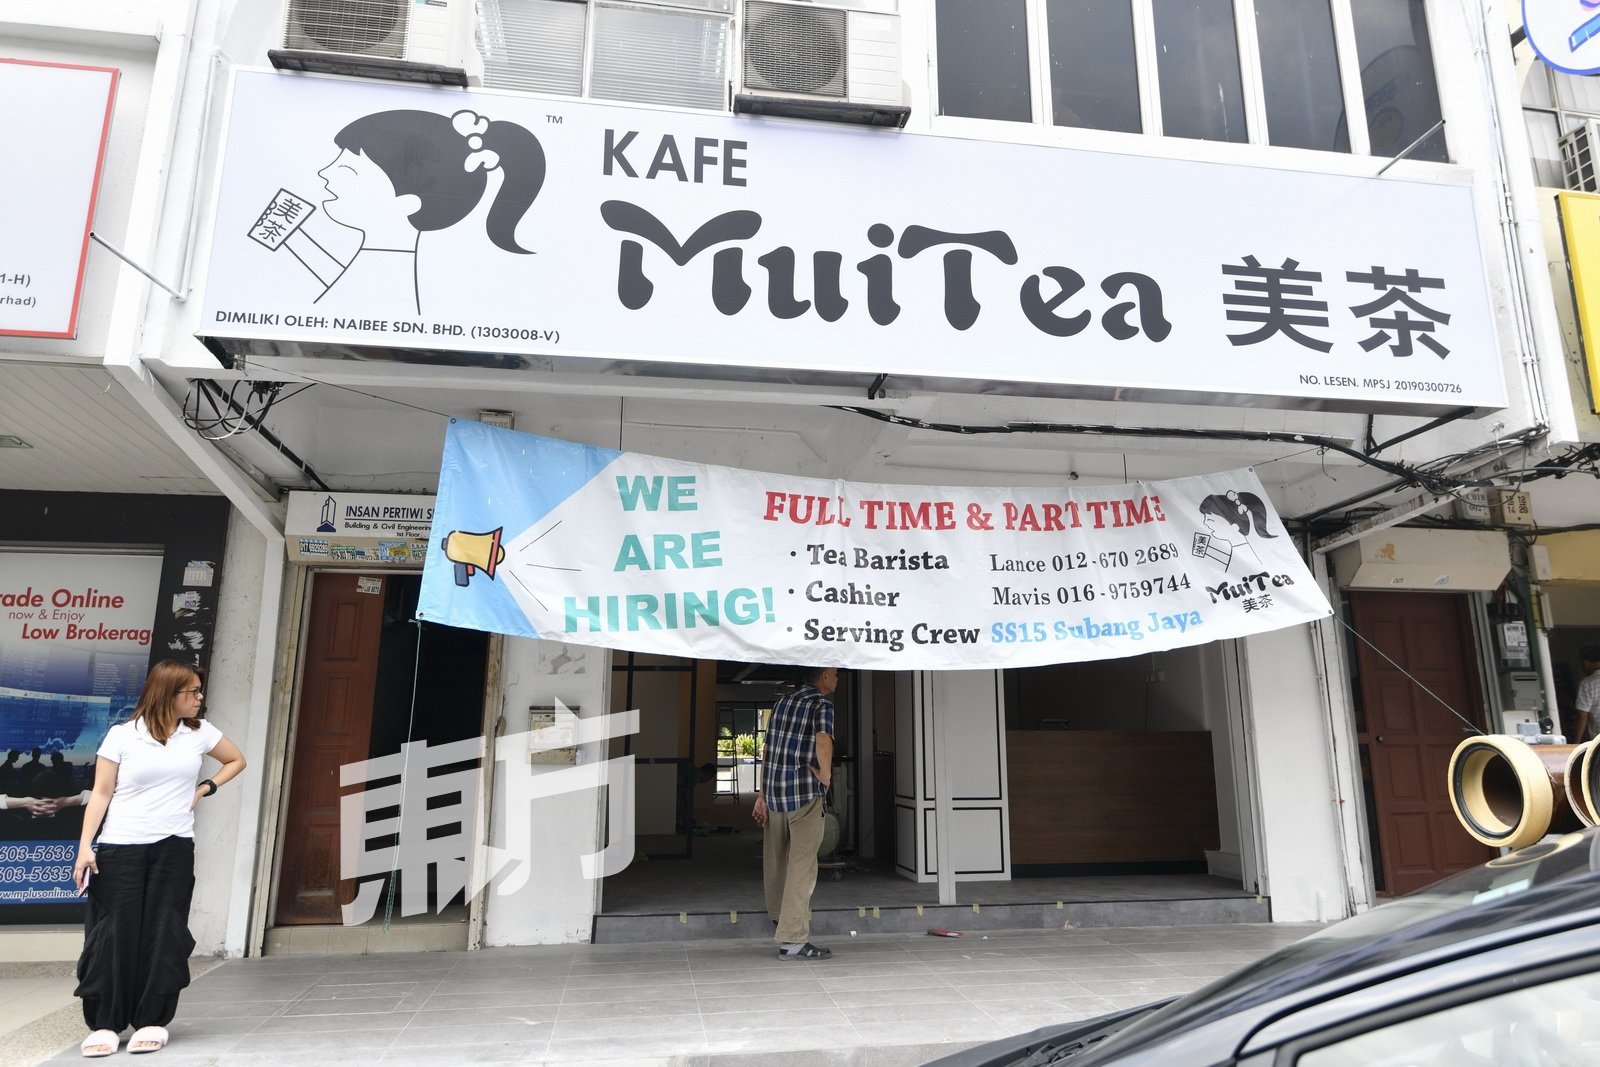 虽说SS15 的新式茶饮店已多不胜数，但许多品牌仍决定加入阵 容， 在该区域展店，其中包括在柔佛新山已有两家专门店的 “美茶”。